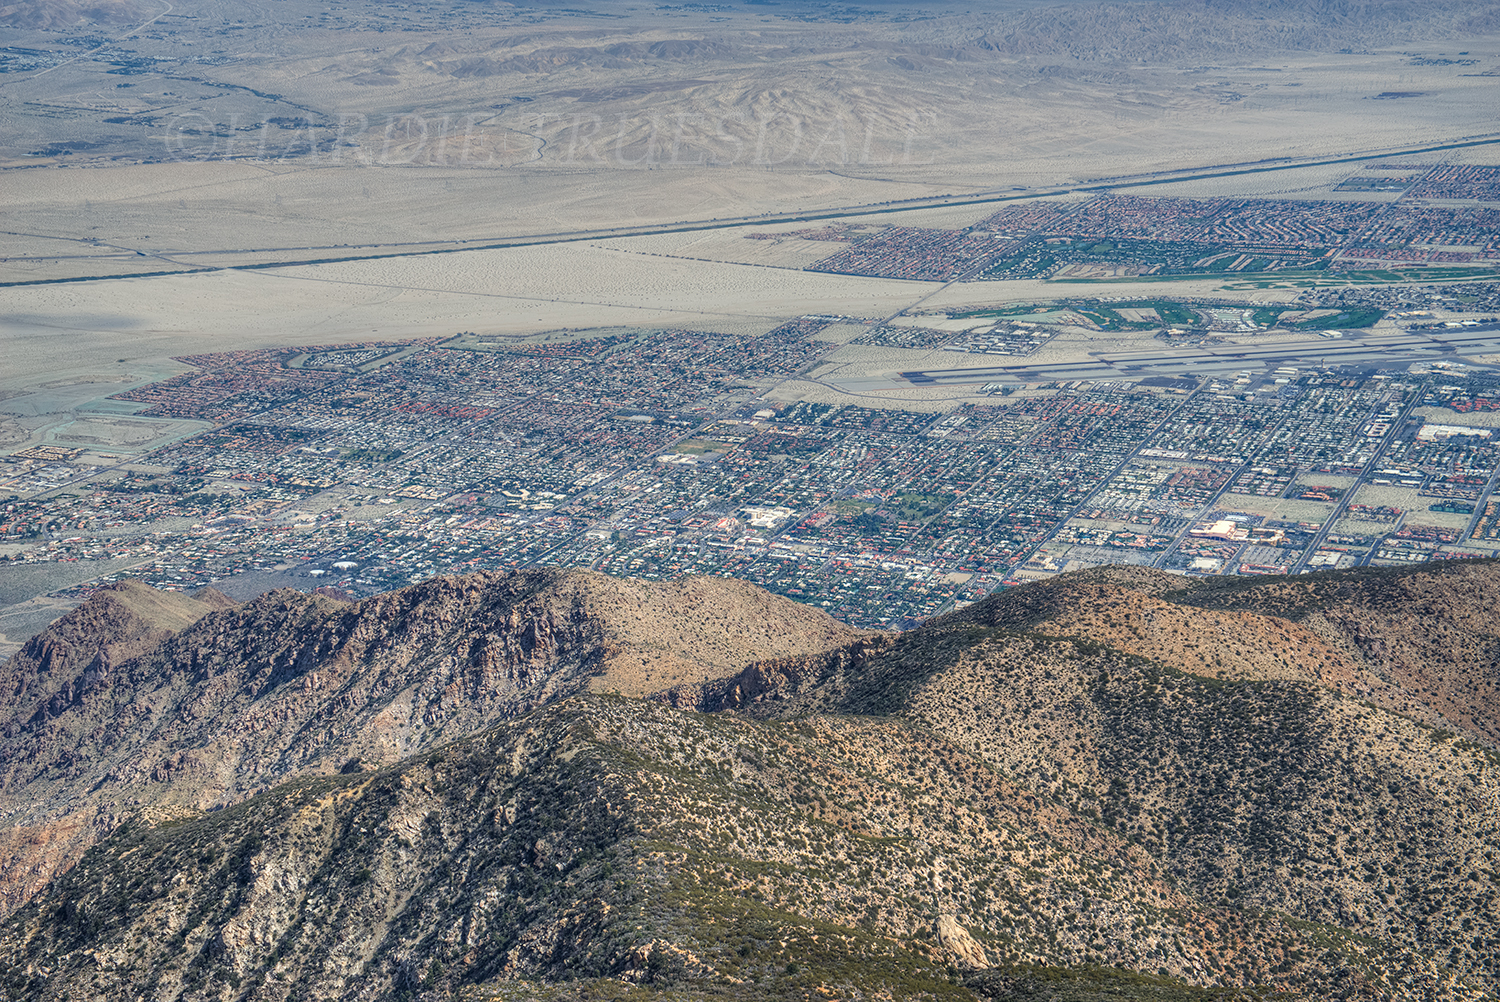 CA#151 "San Jacinto Mtn Views, Palm Springs"